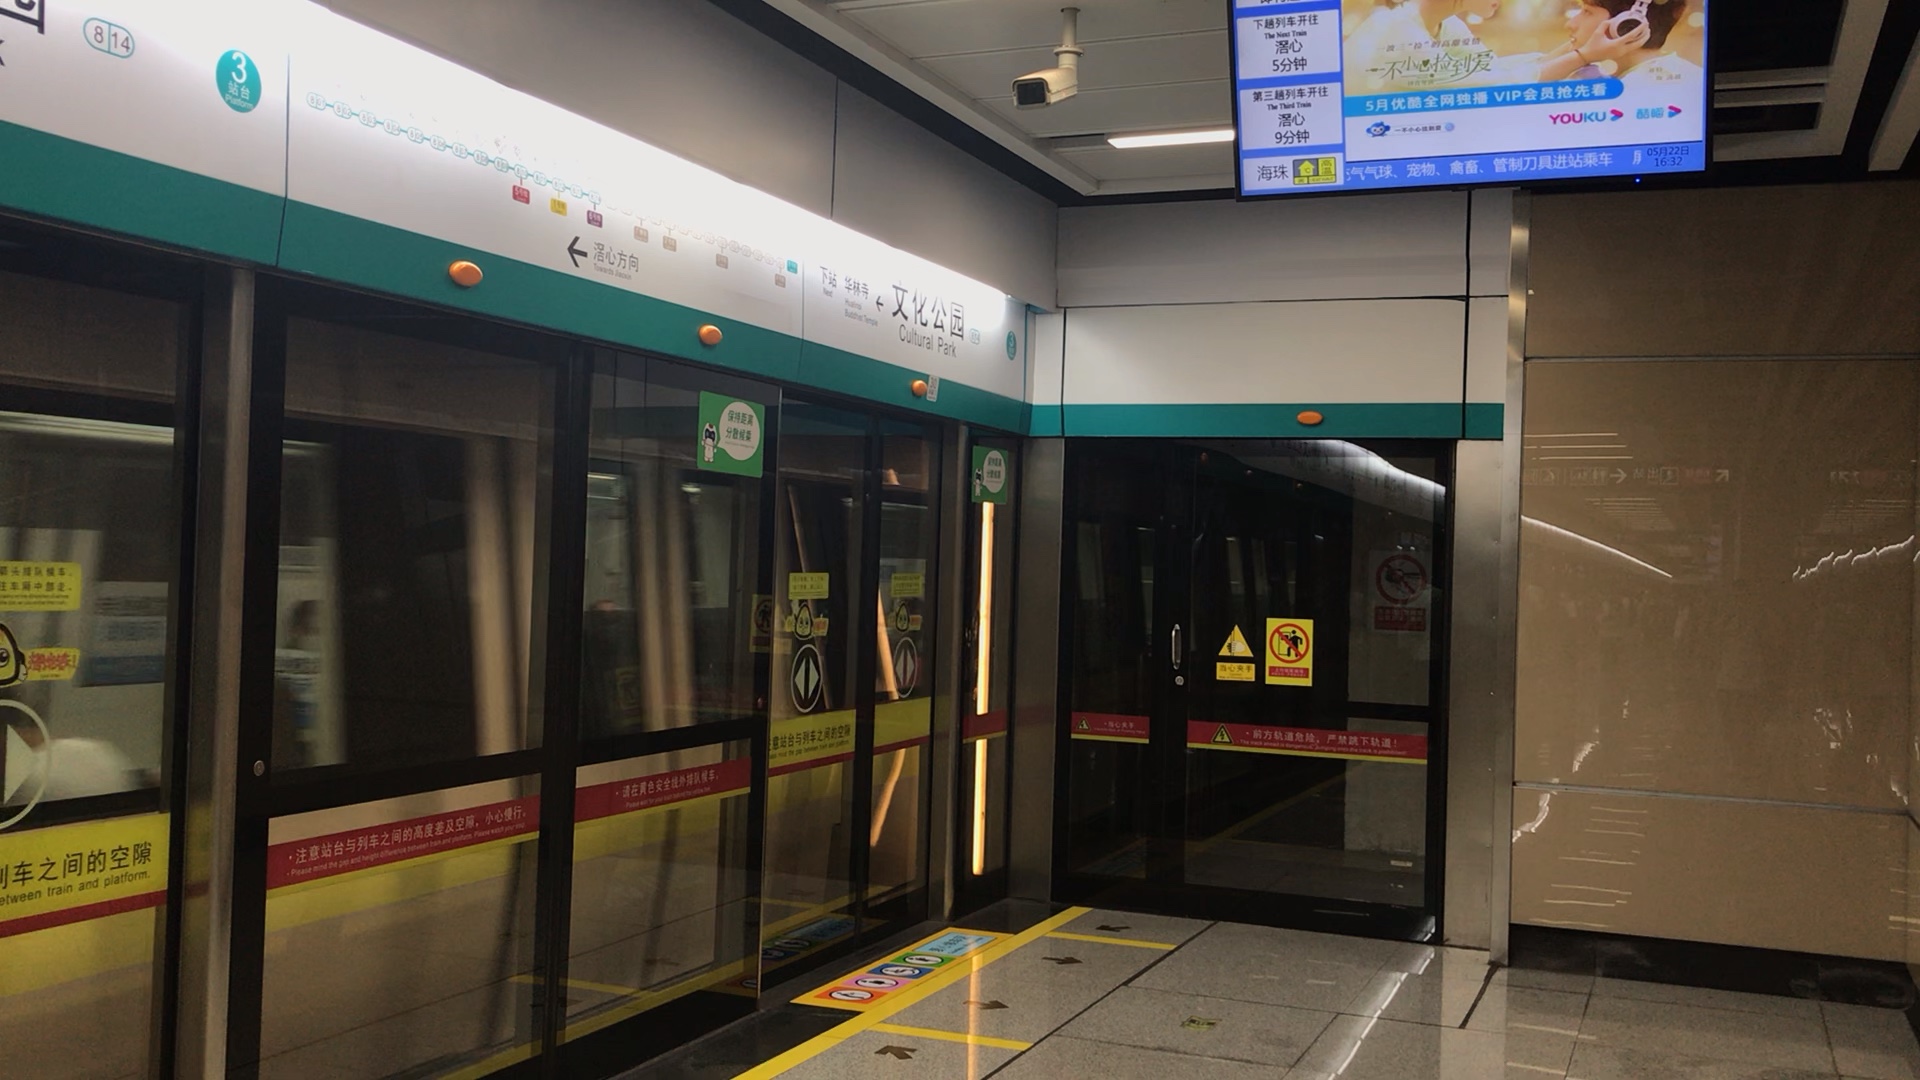 广州地铁8号线短线列车(聚龙方向)本务a2型bbd2x75